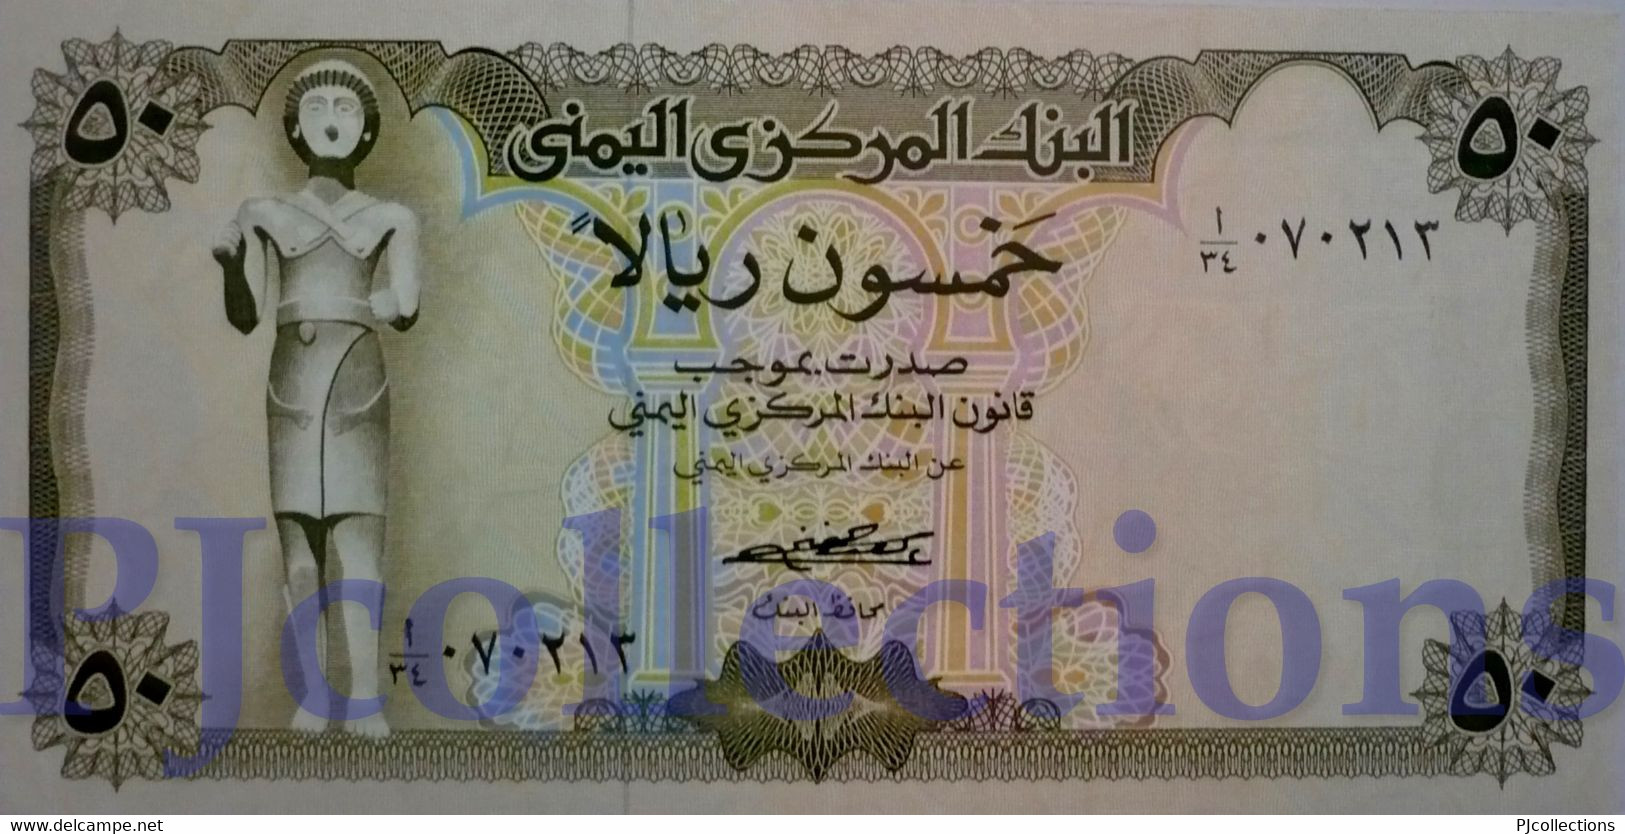 YEMEN ARAB REPUBLIC 50 RIALS 1973 PICK 15a UNC - Yémen